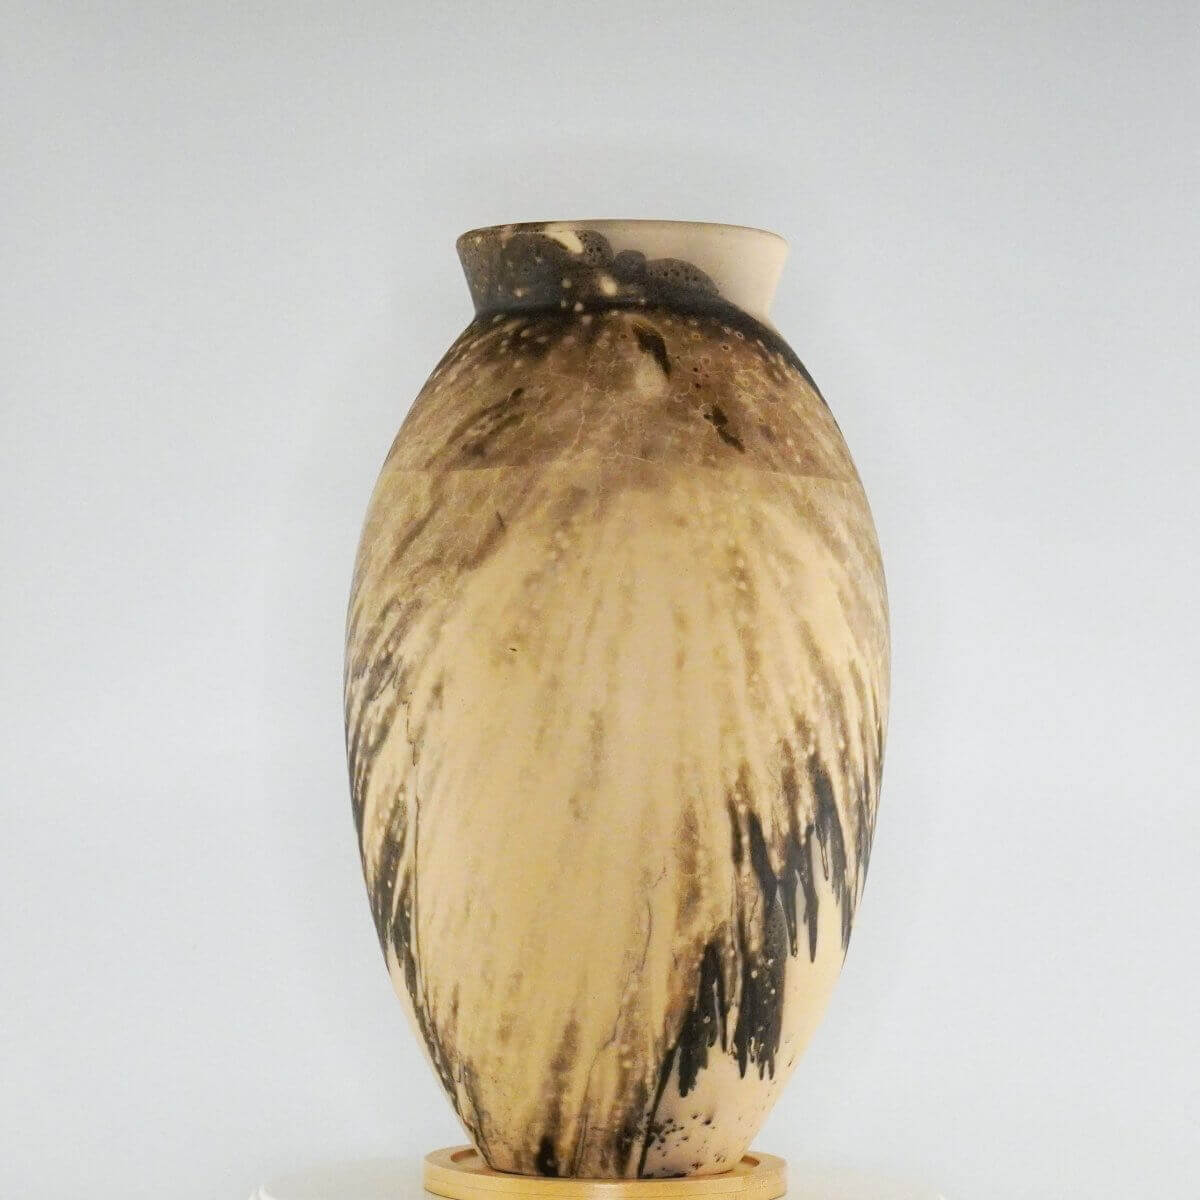 Raku pottery vase ceramic home decor RAAQUU Large Oval Ceramic Vase Obvara S/N0000363 13.5" Raku Pottery